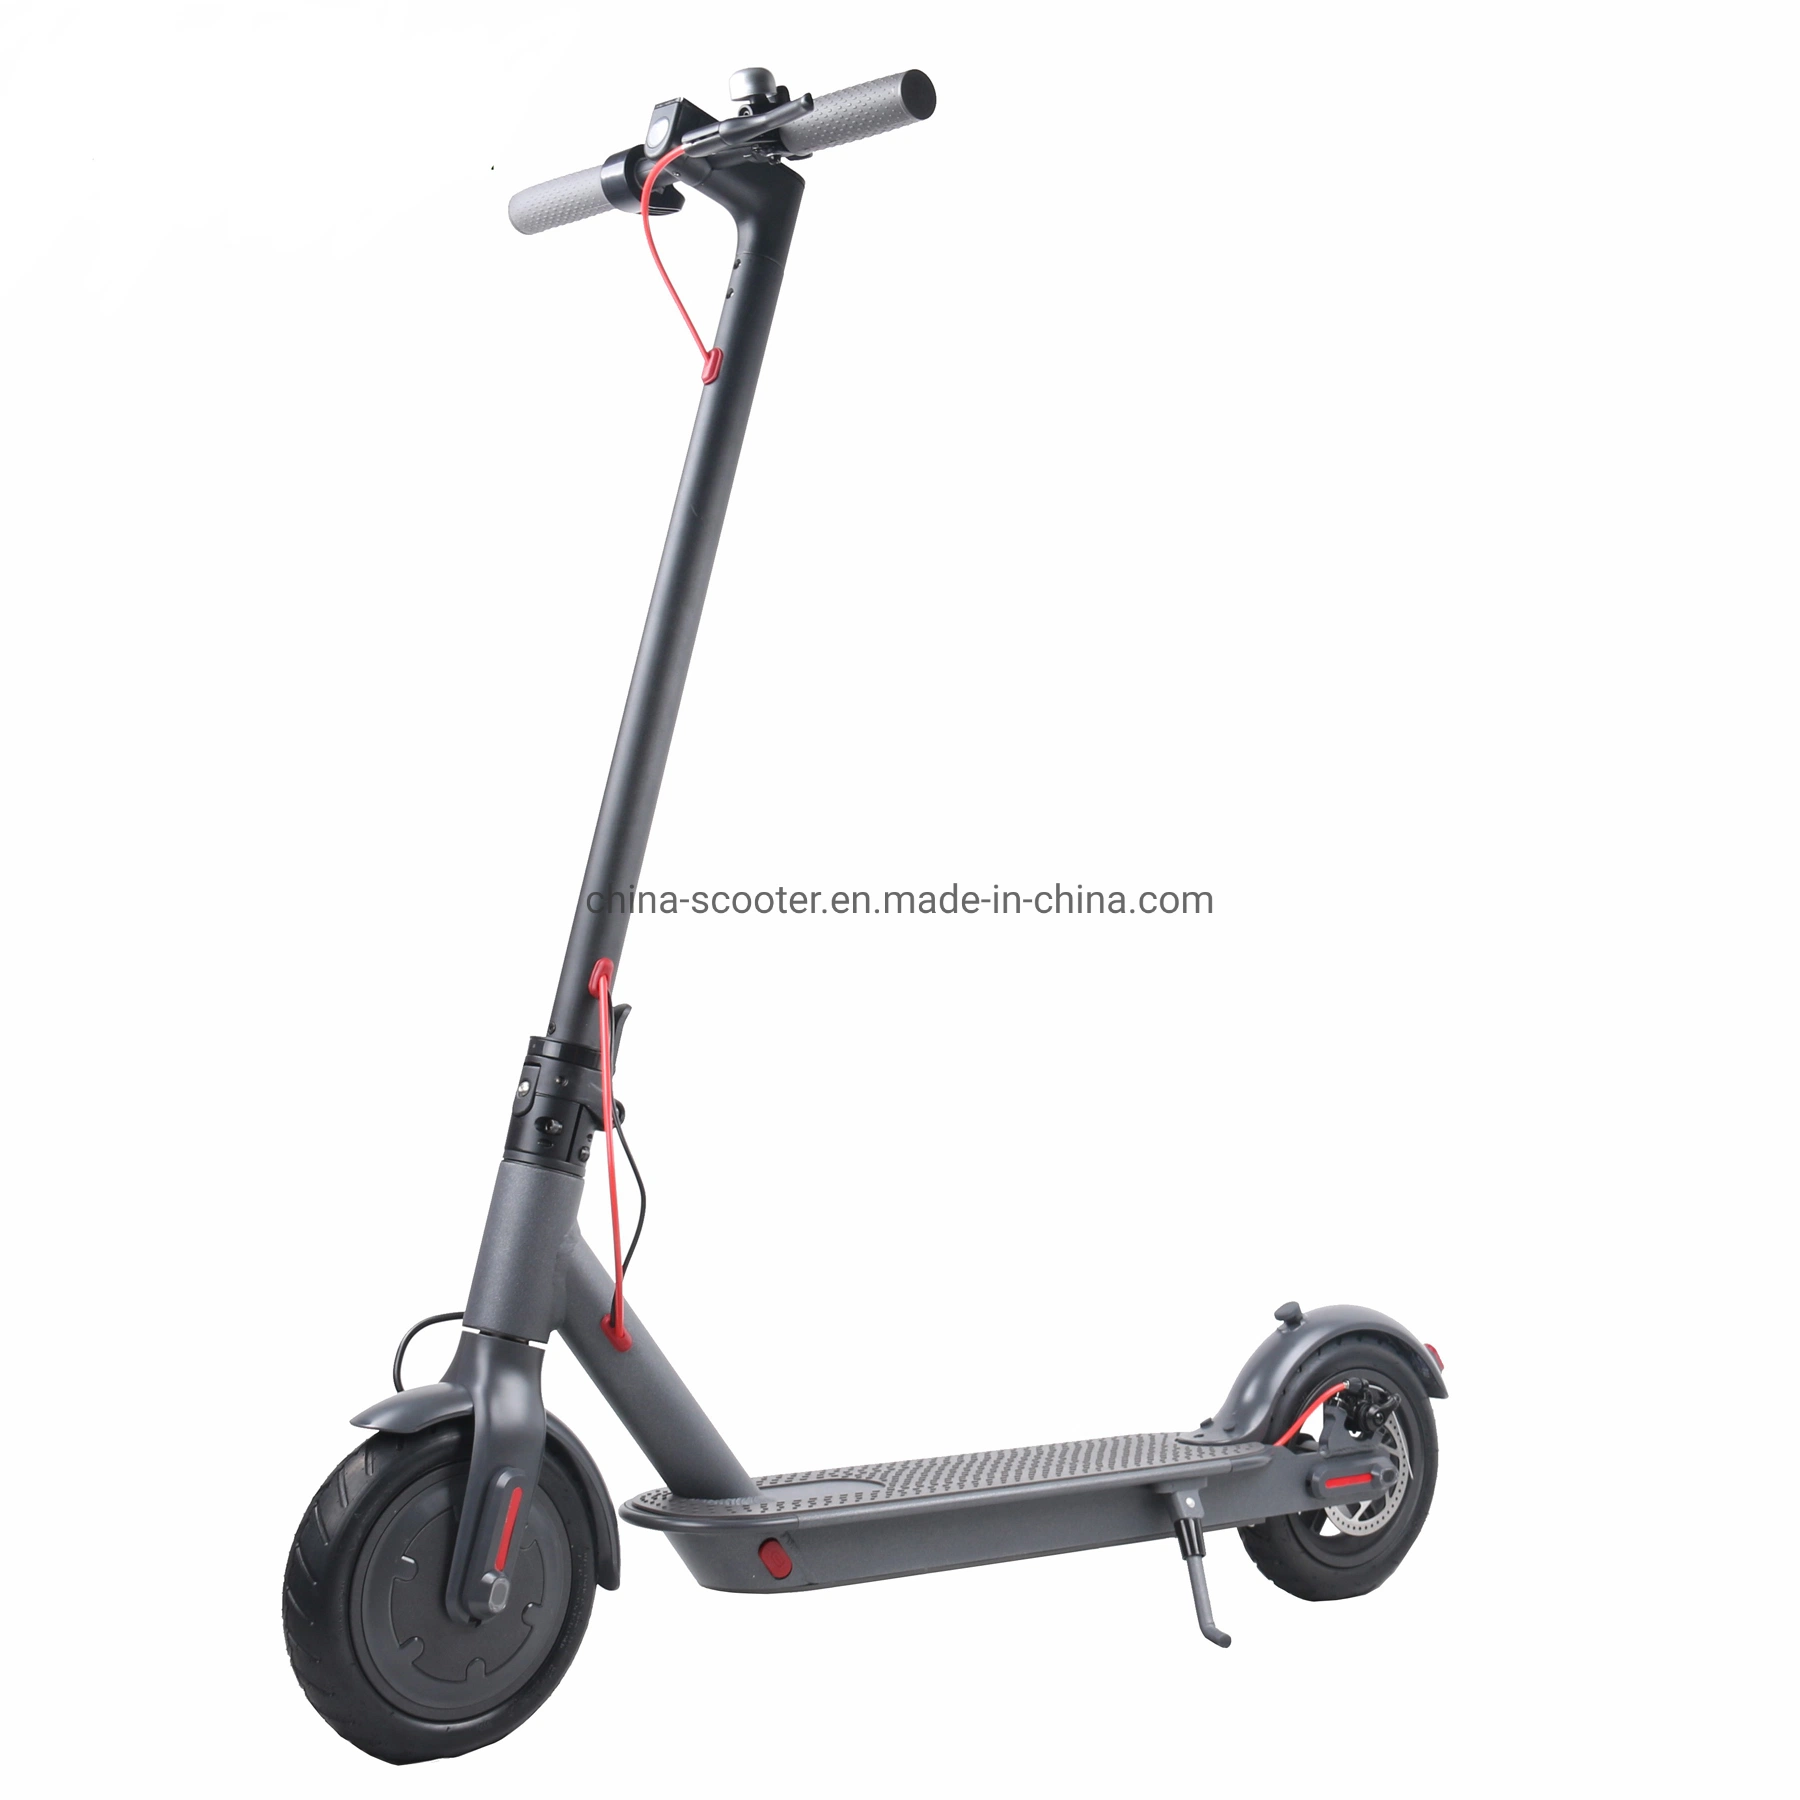 Оптовая торговля мобильности с электроприводом складывания крыльев для скутера 2 Колеса велосипеда скутера электродвигателя